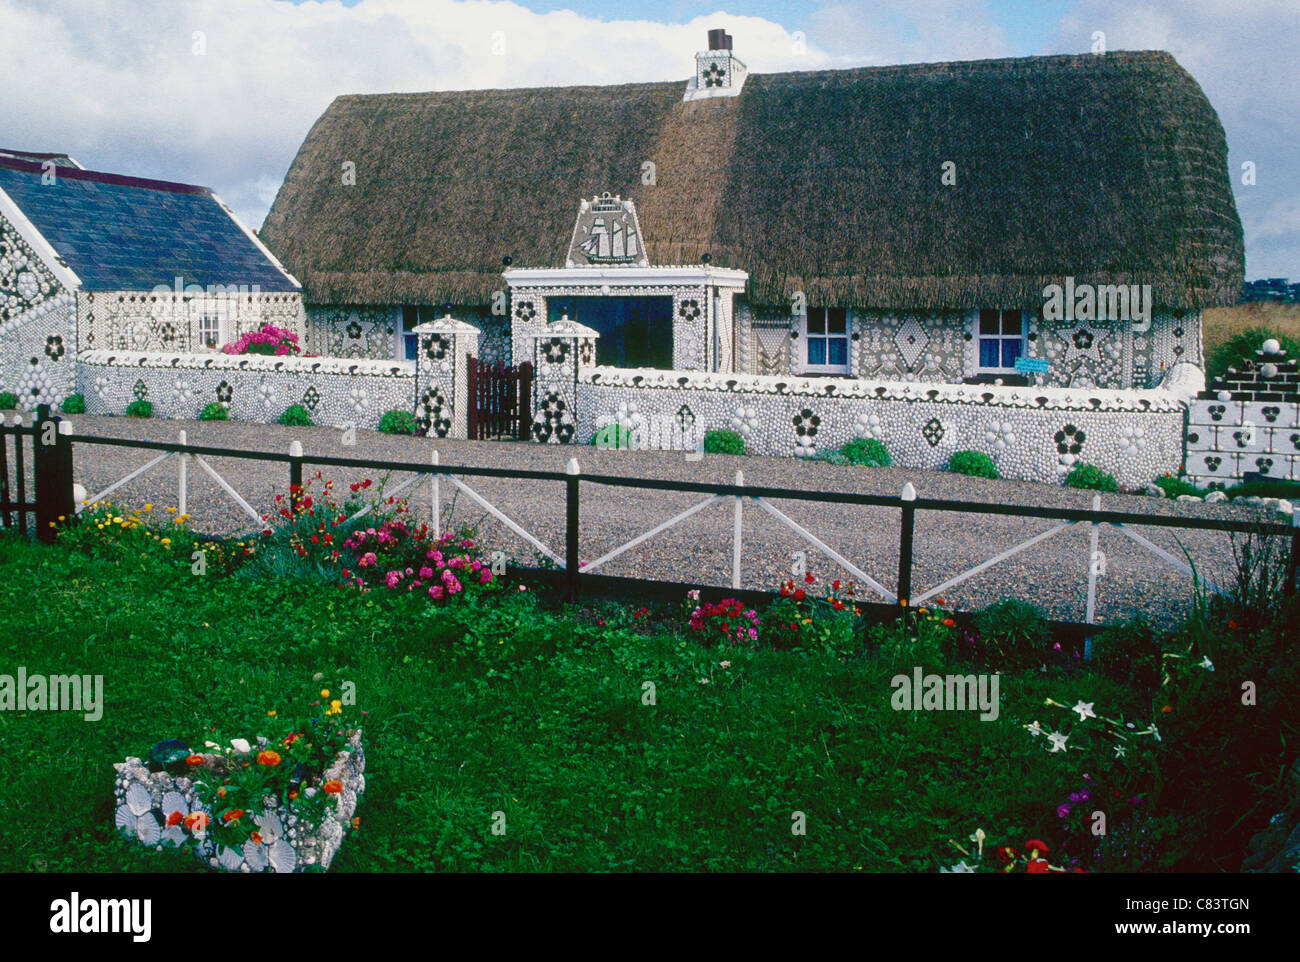 Une chaumière unique décoré avec des coquillages à Co Wexford Irlande Banque D'Images